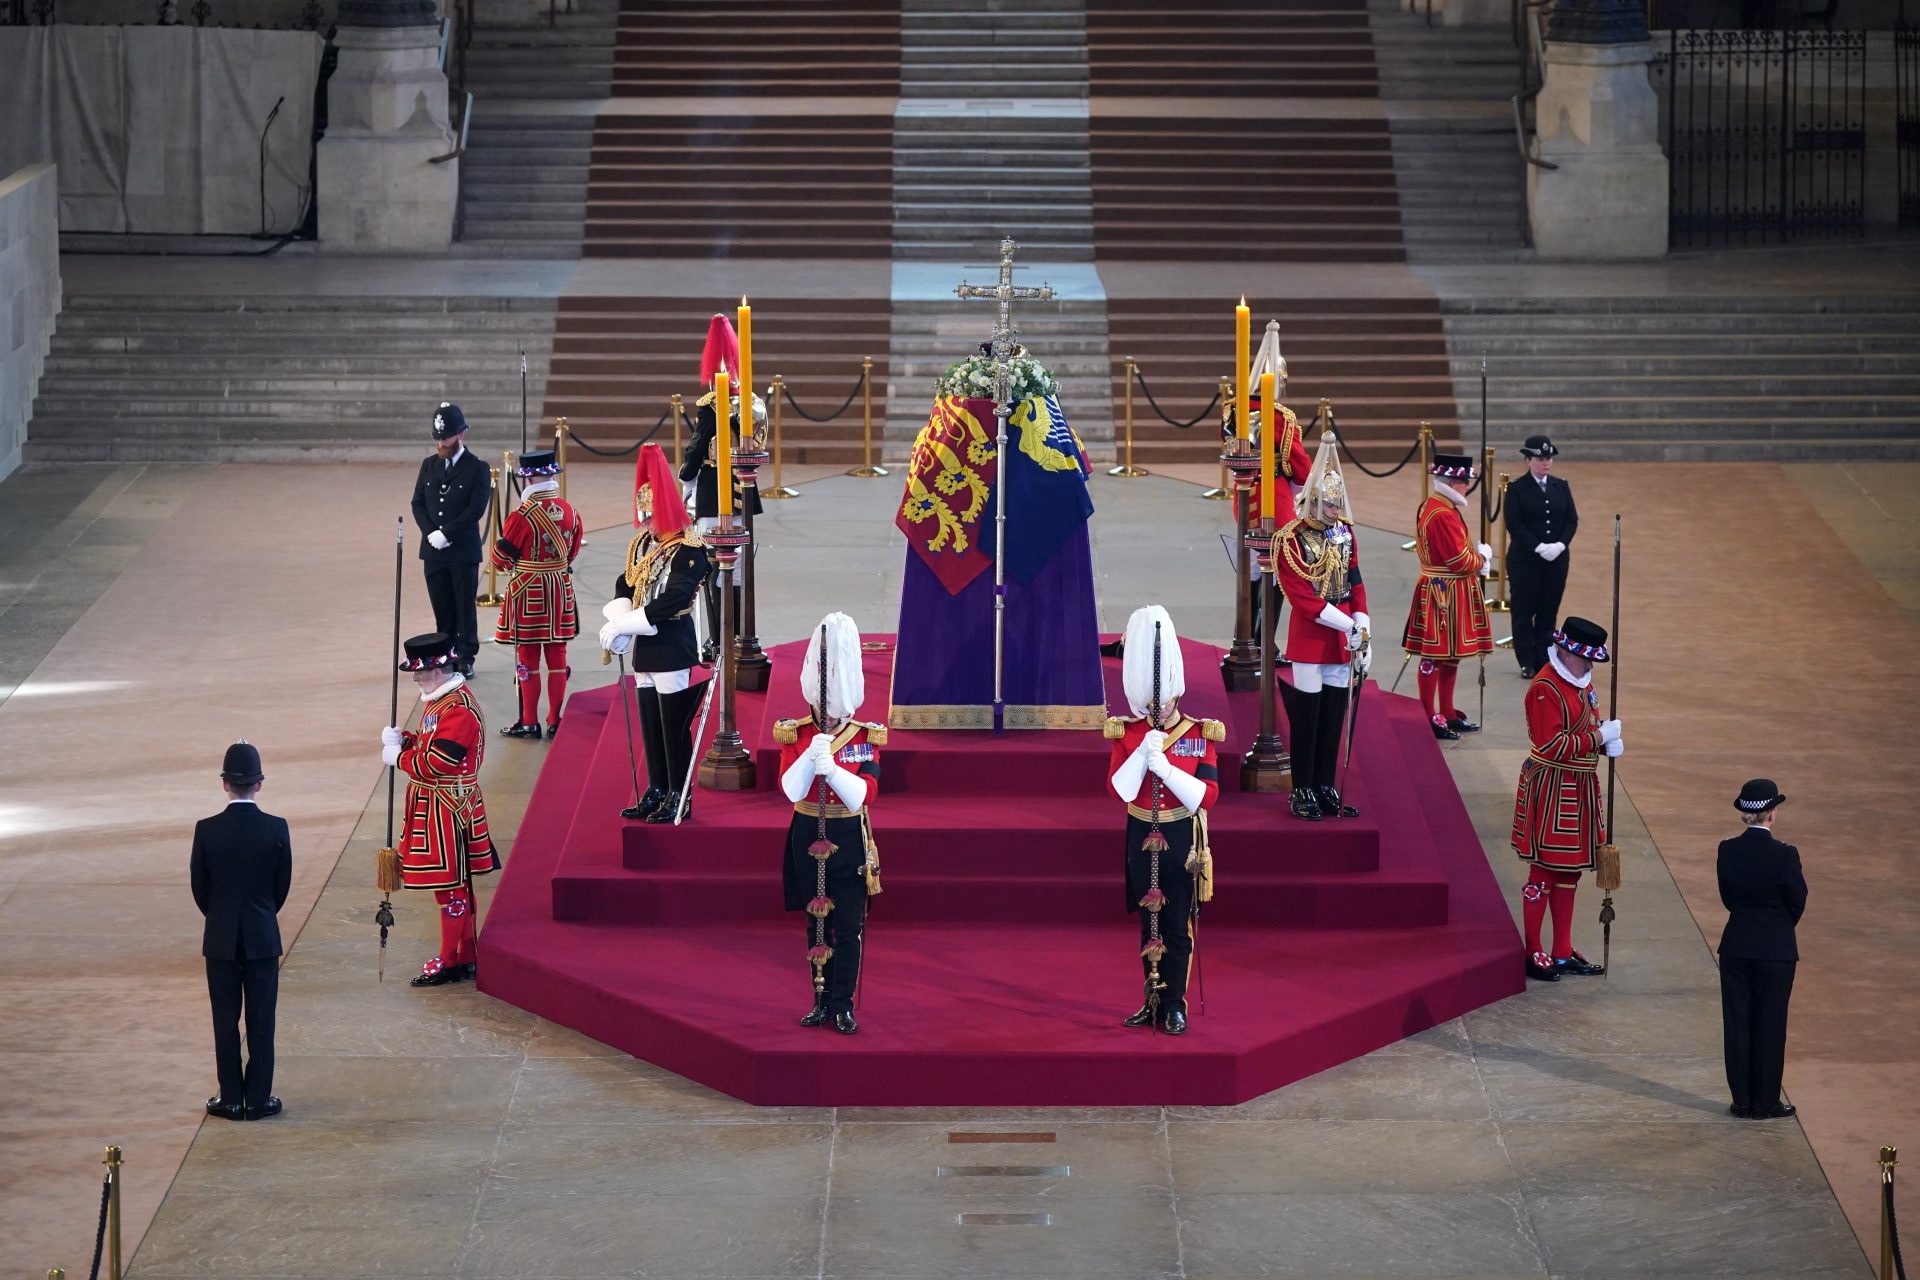 Les politiciens de haut niveau, la royauté et les vainqueurs de Formule 1. Qui assistera aux funérailles de la reine Elizabeth II ?